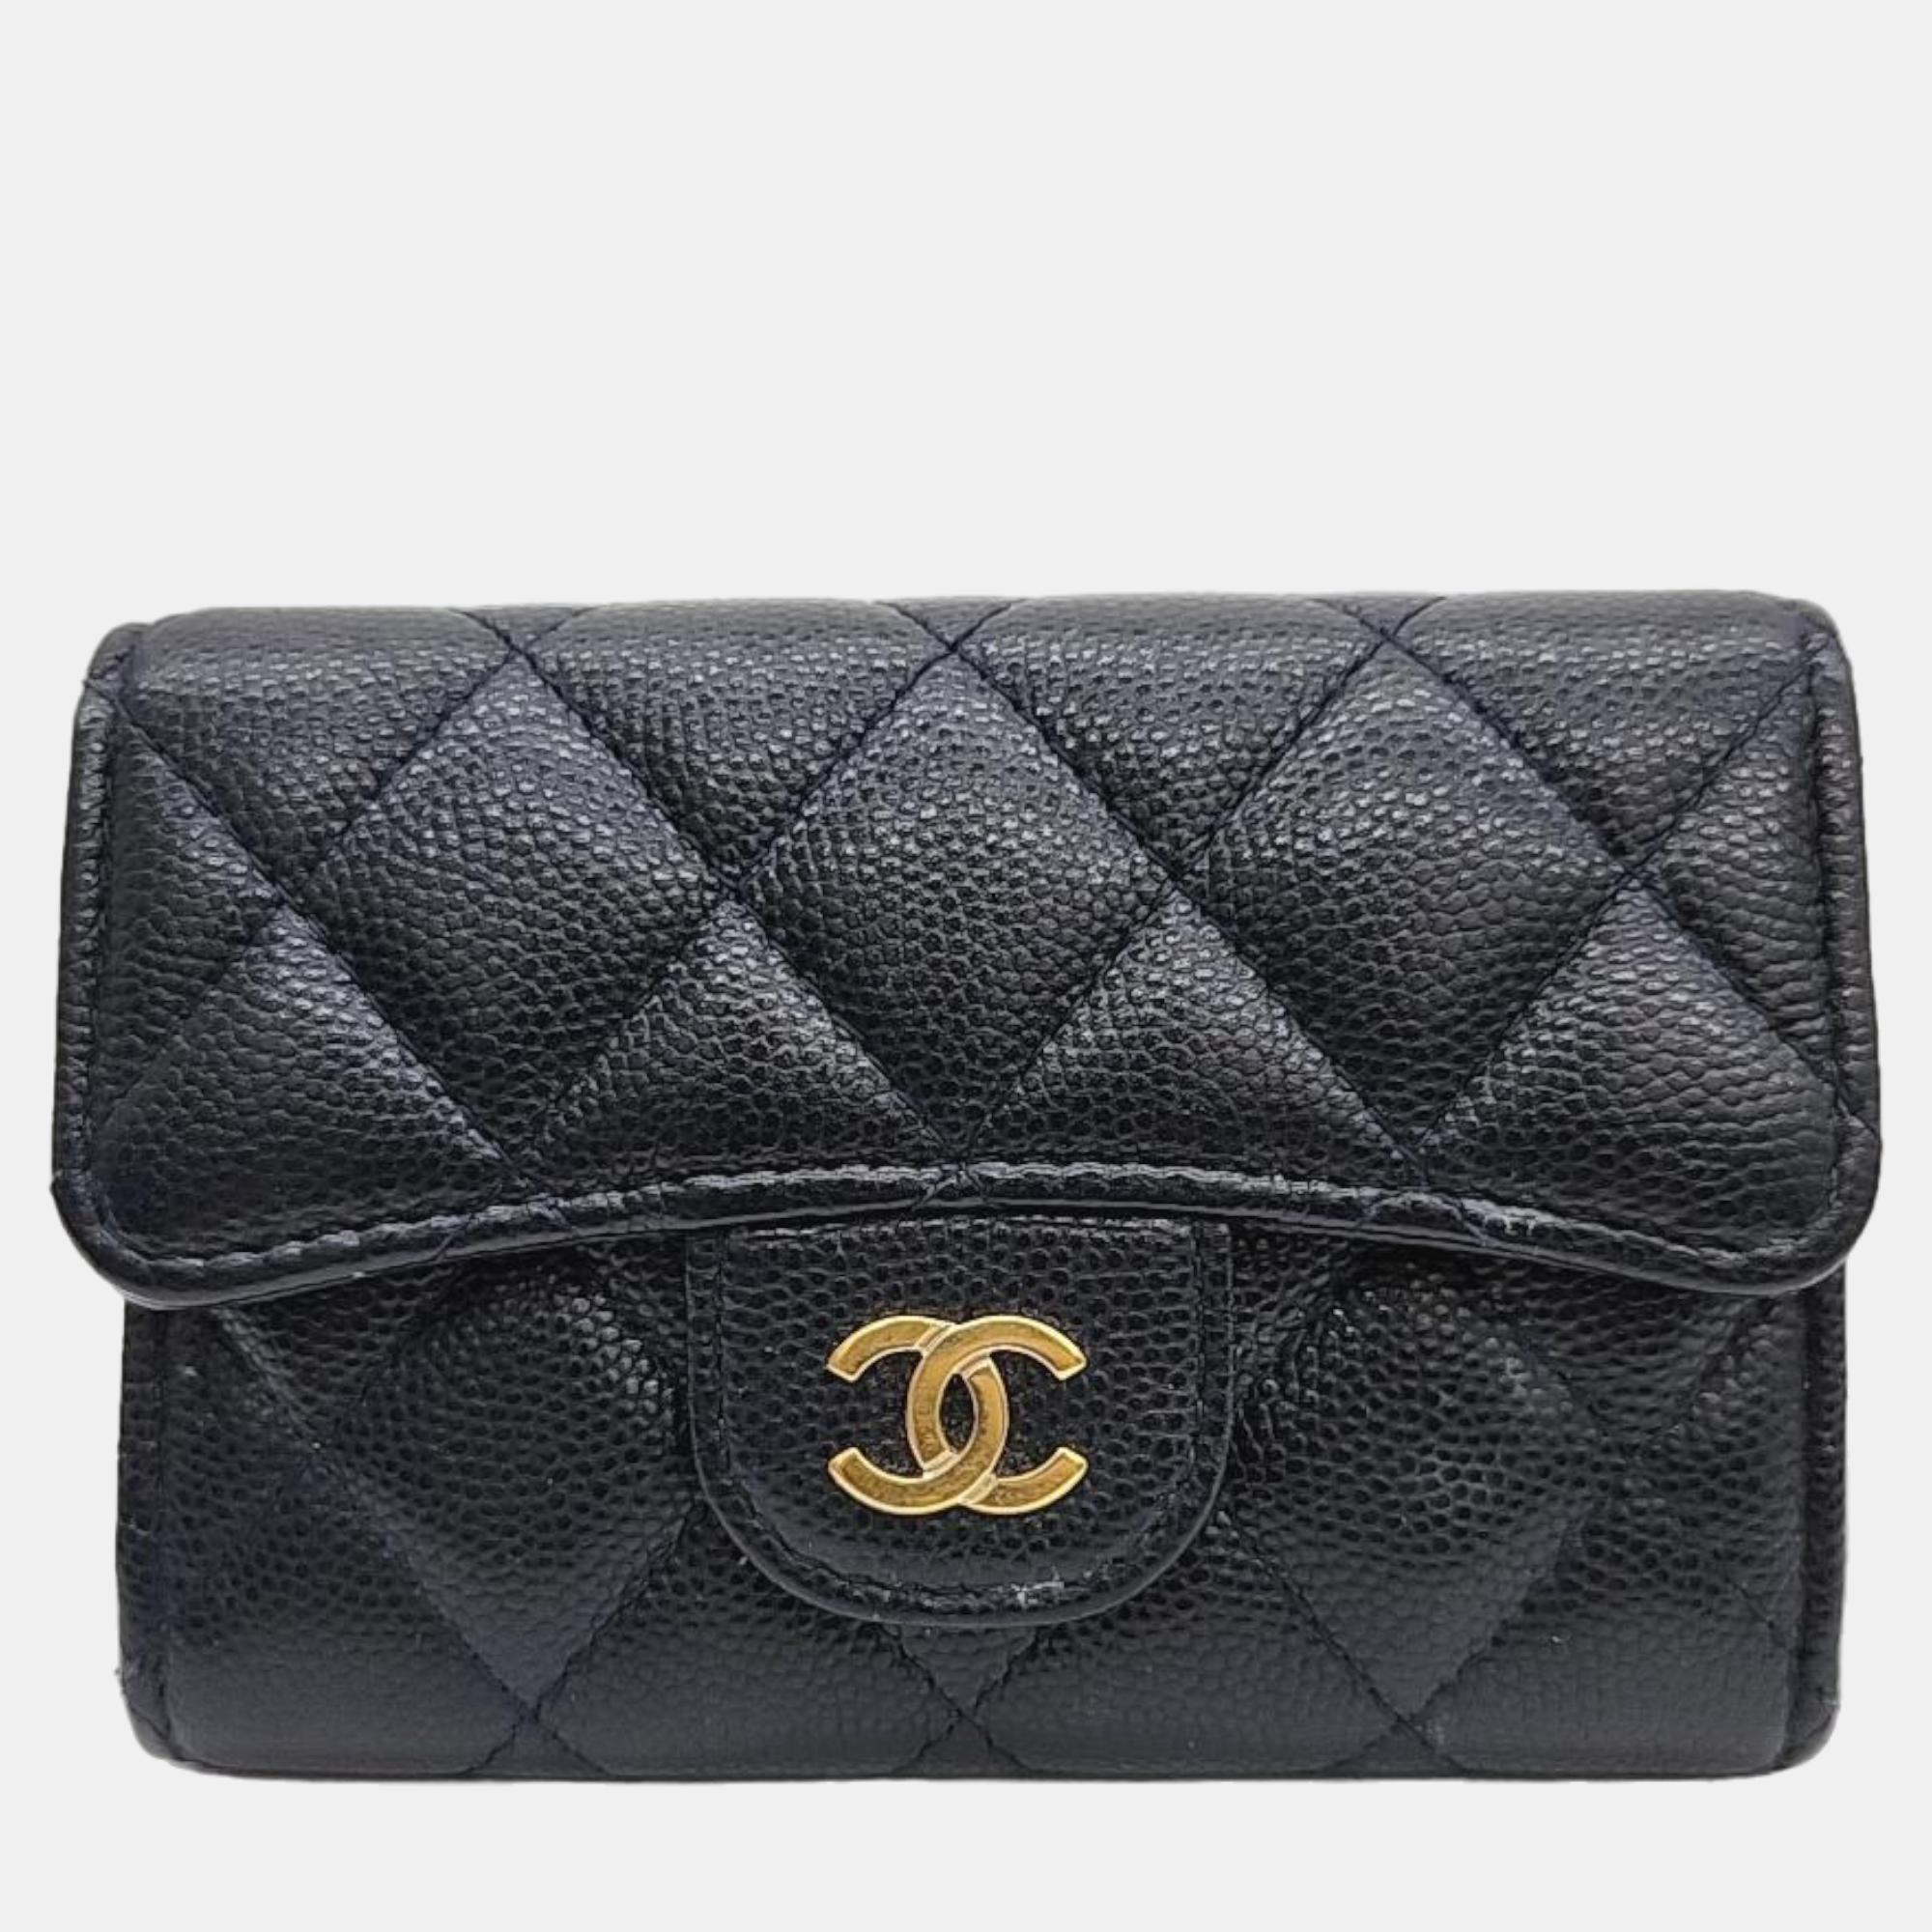 Chanel Black Caviar Card Wallet